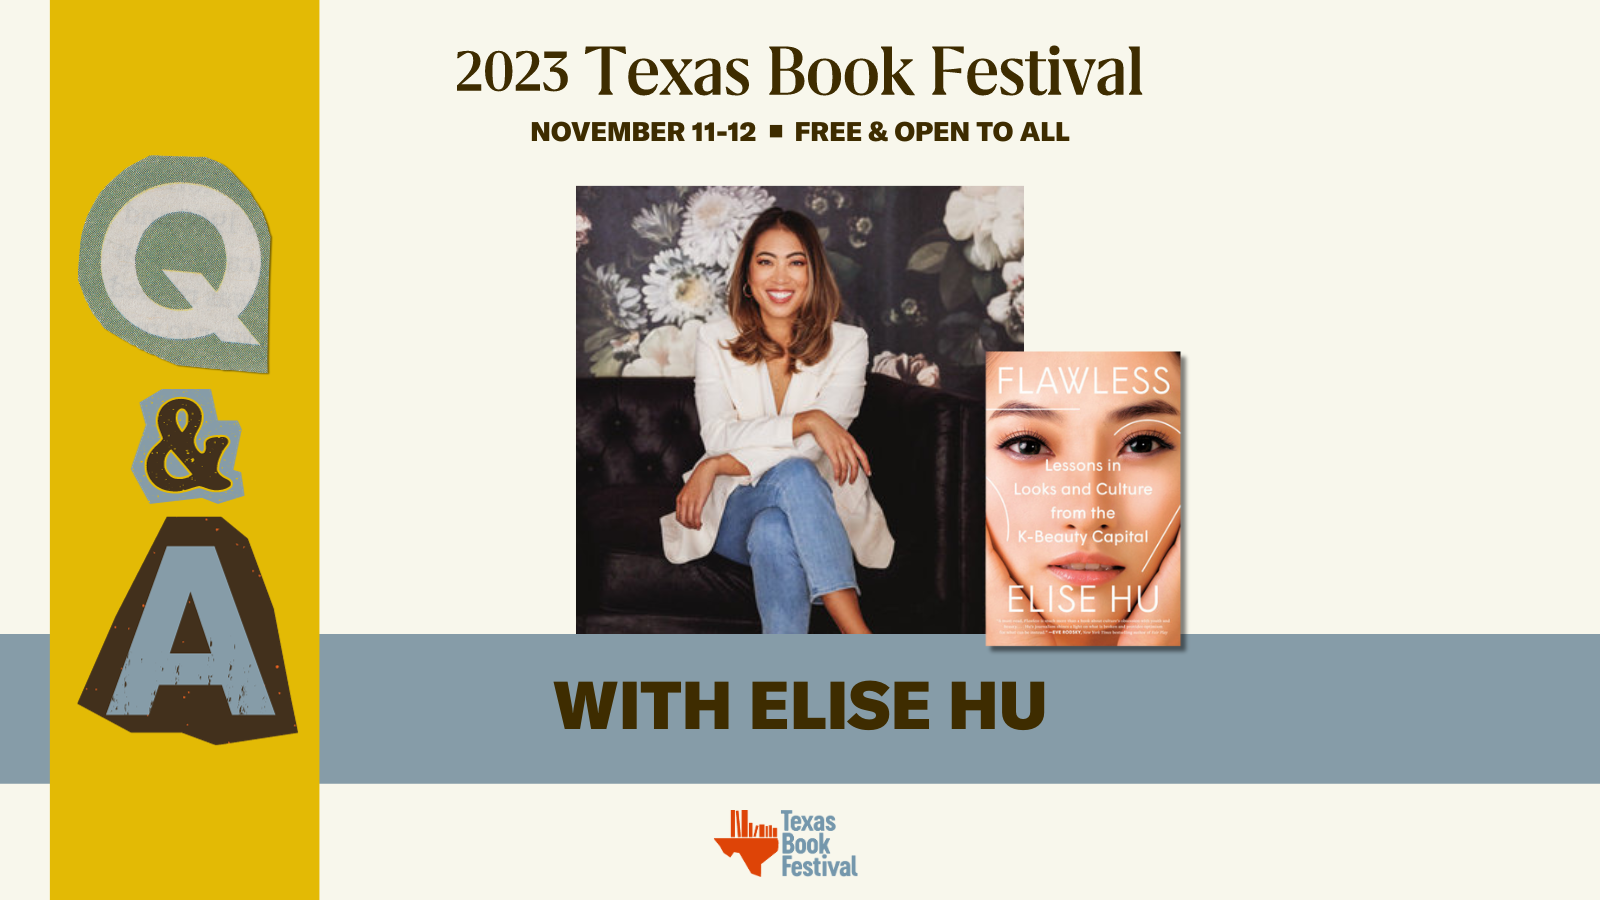 Q&A With Elise Hu